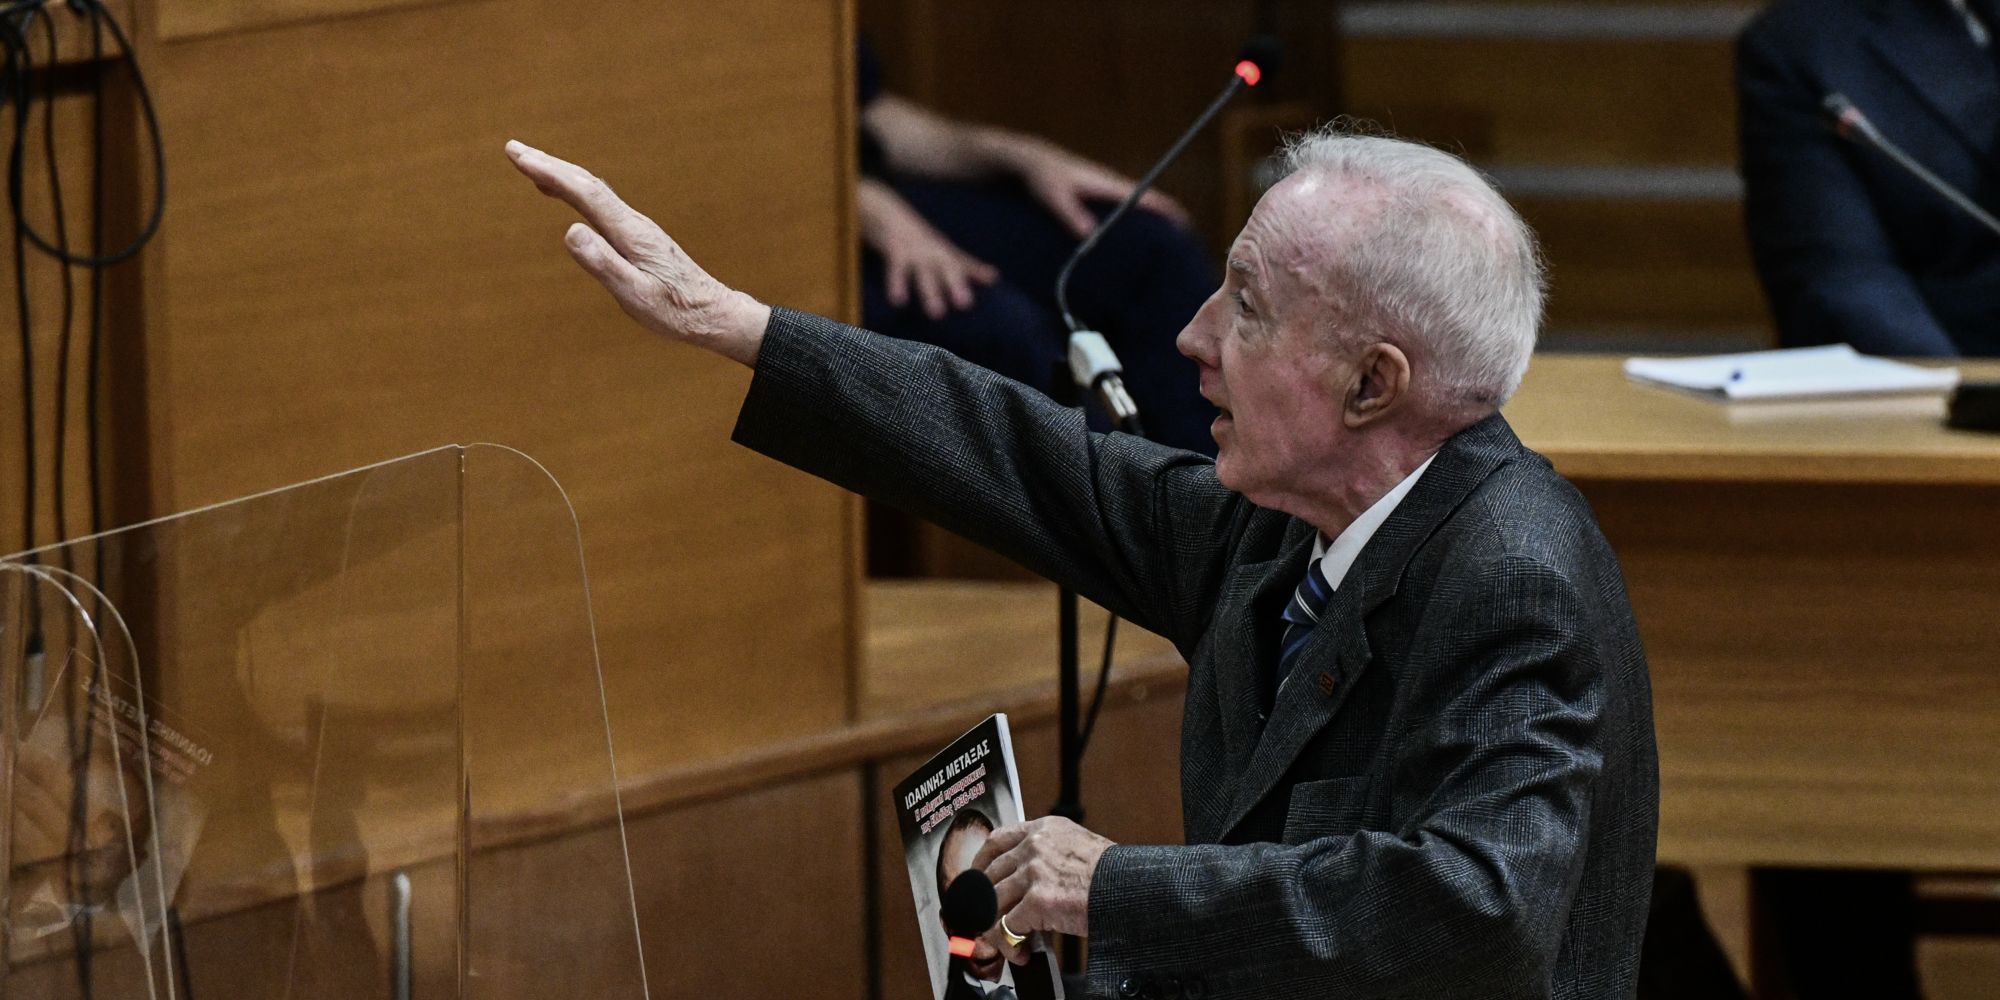 O Kωνσταντίνος Πλεύρης χαιρετά ναζιστικά μέσα στο δικαστήριο